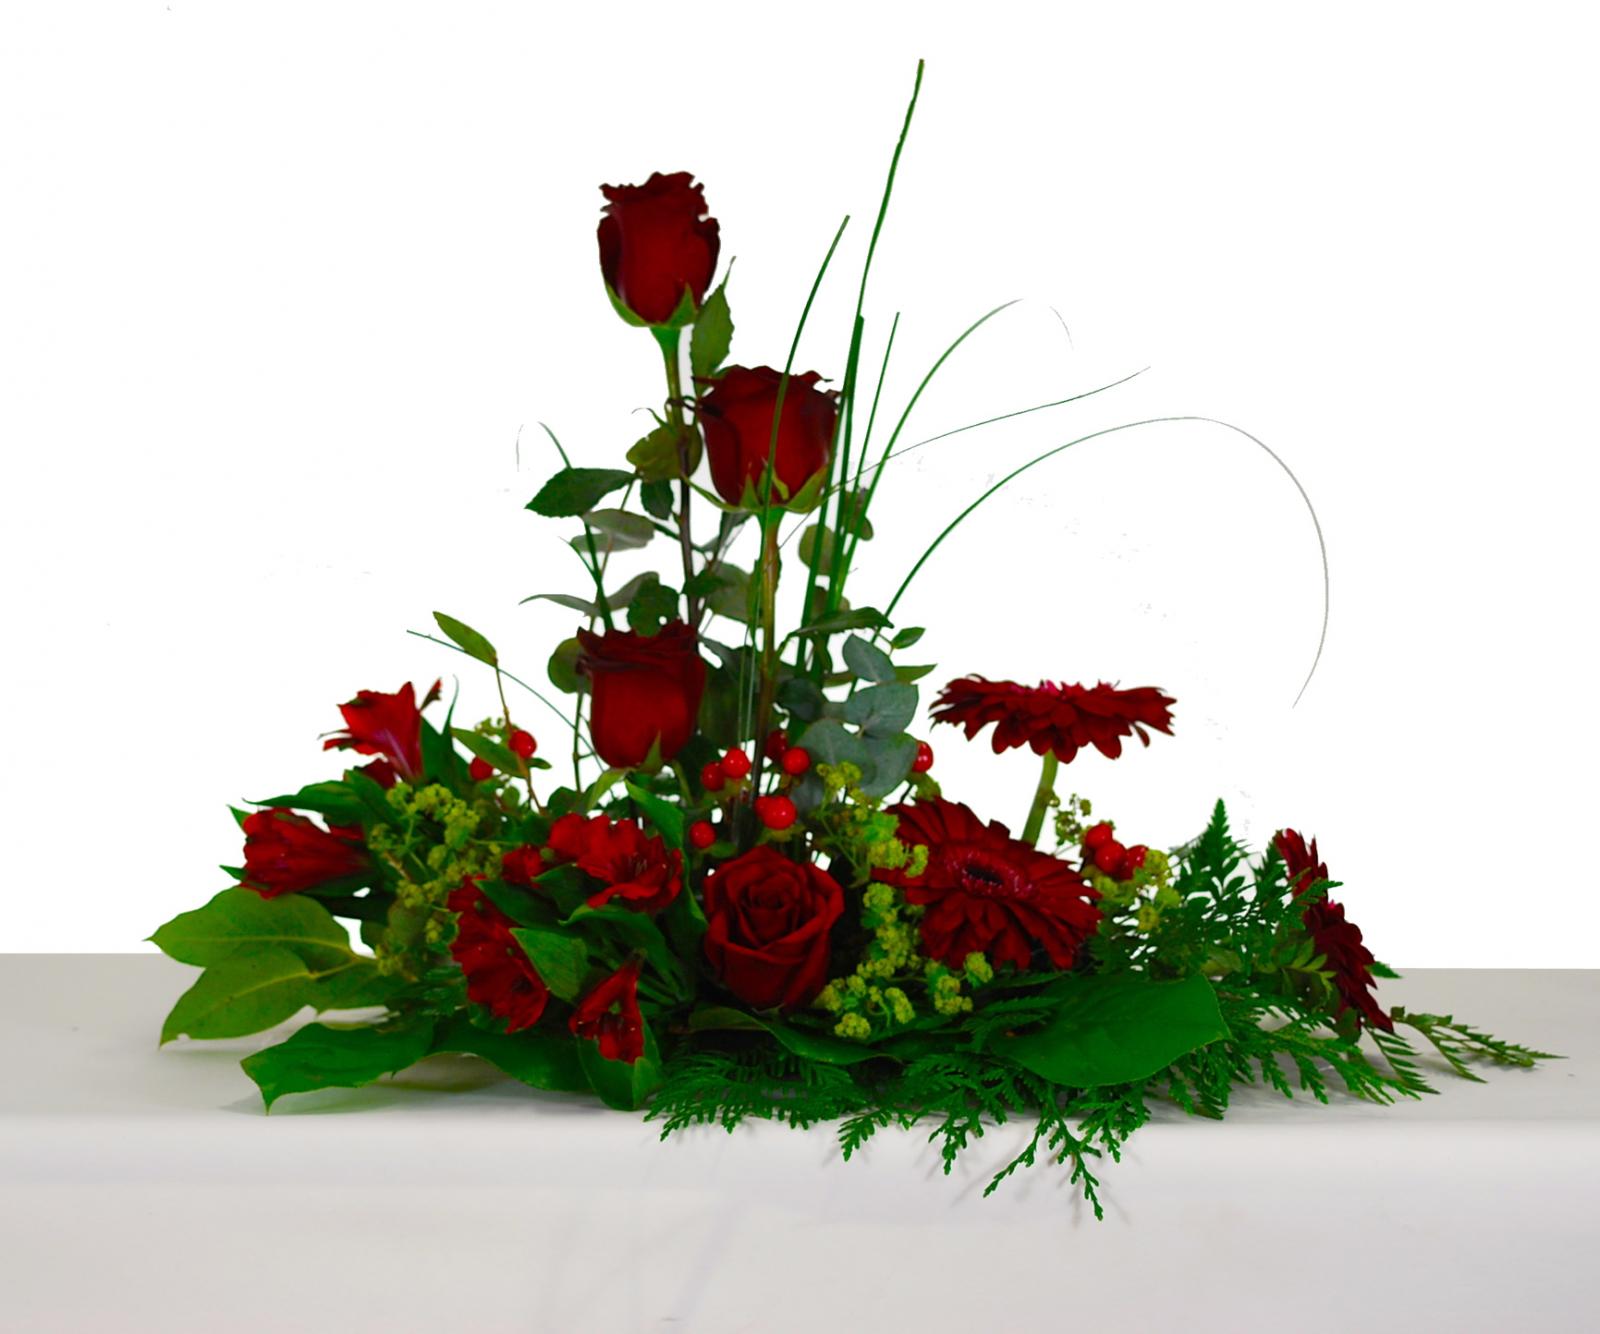 Composición vegetal con Rosas rojas